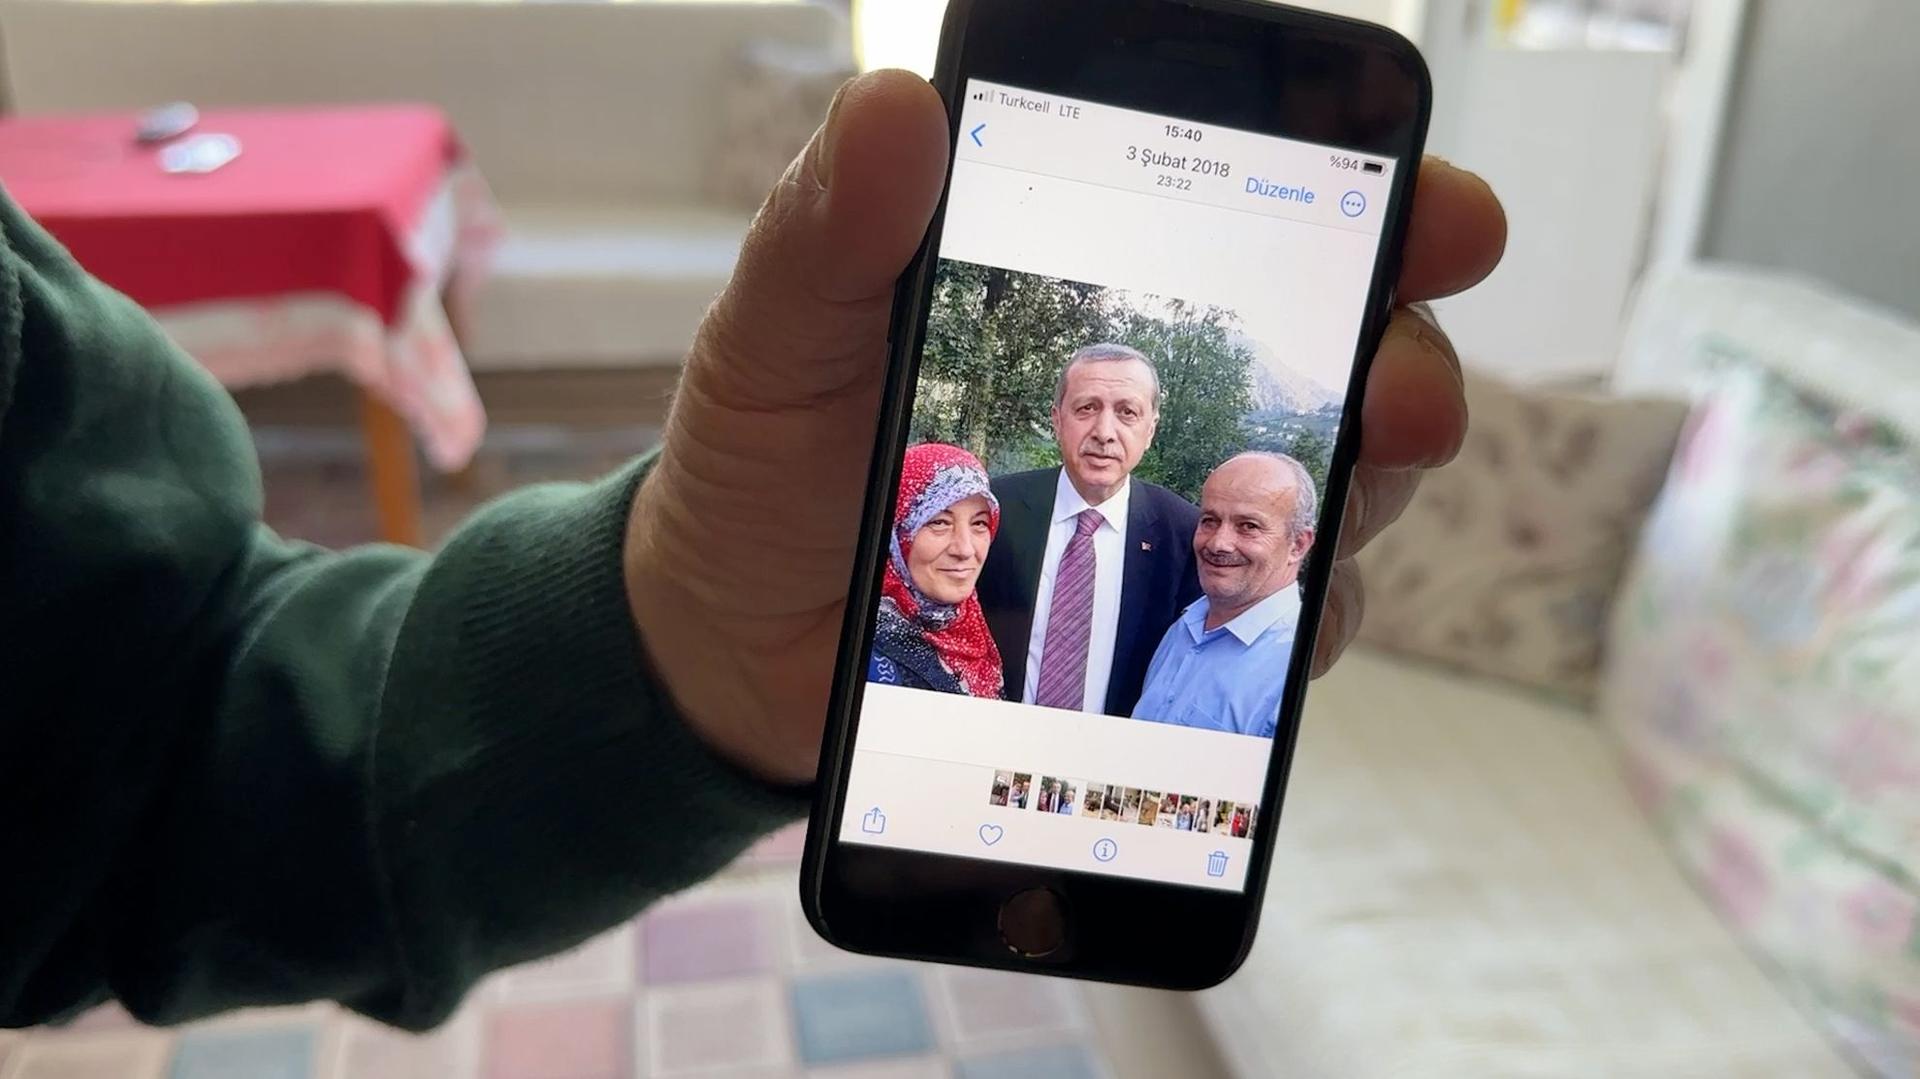 Ismet și Meryem Erdogan, împreună cu președintele. Foto: Carolina Drüten